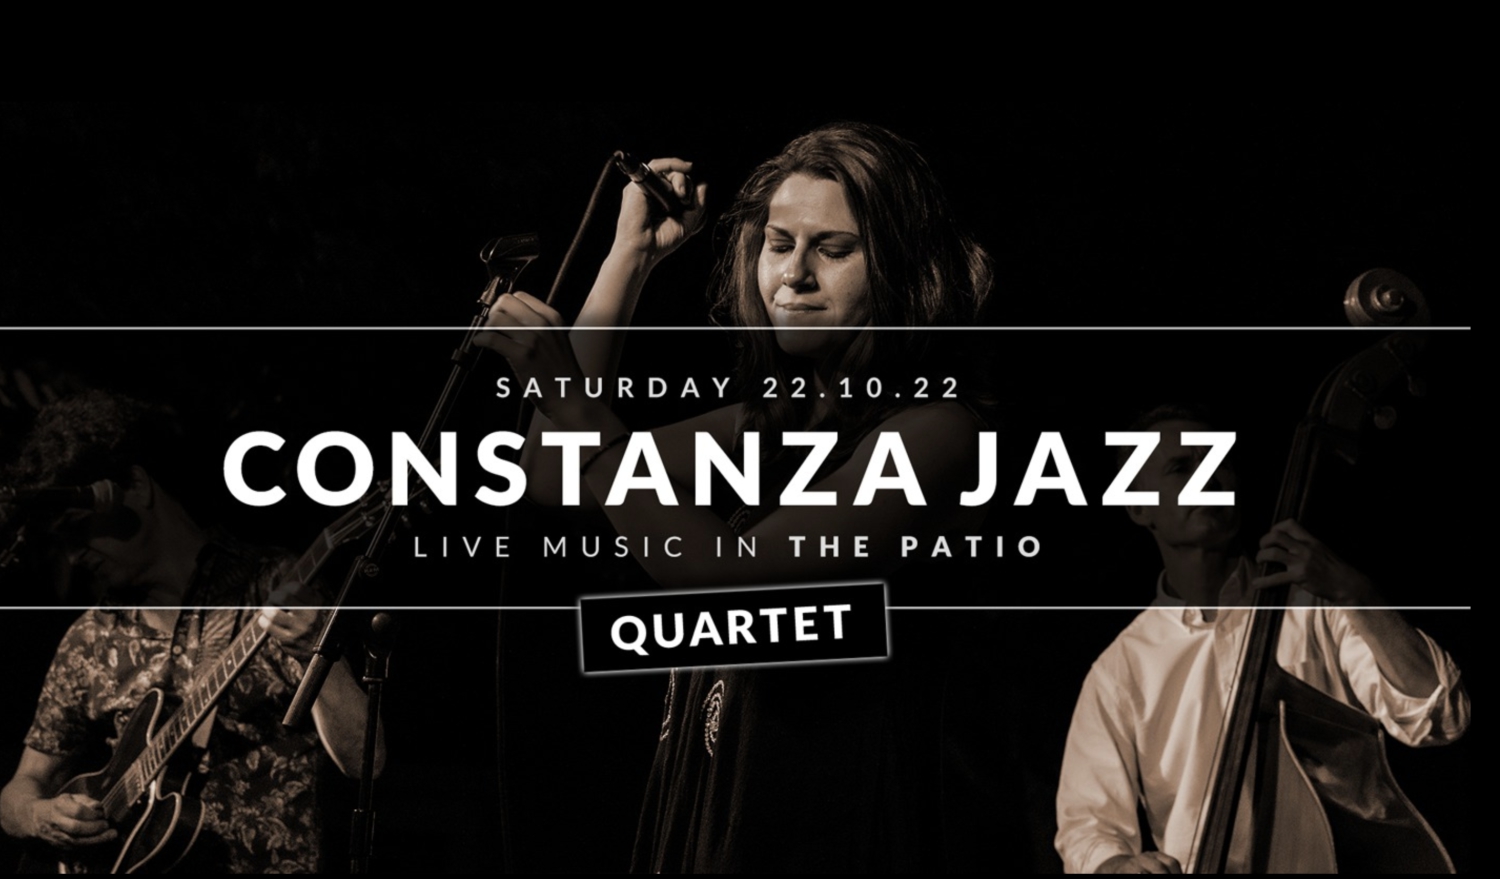 Constanza Jazz at The Patio